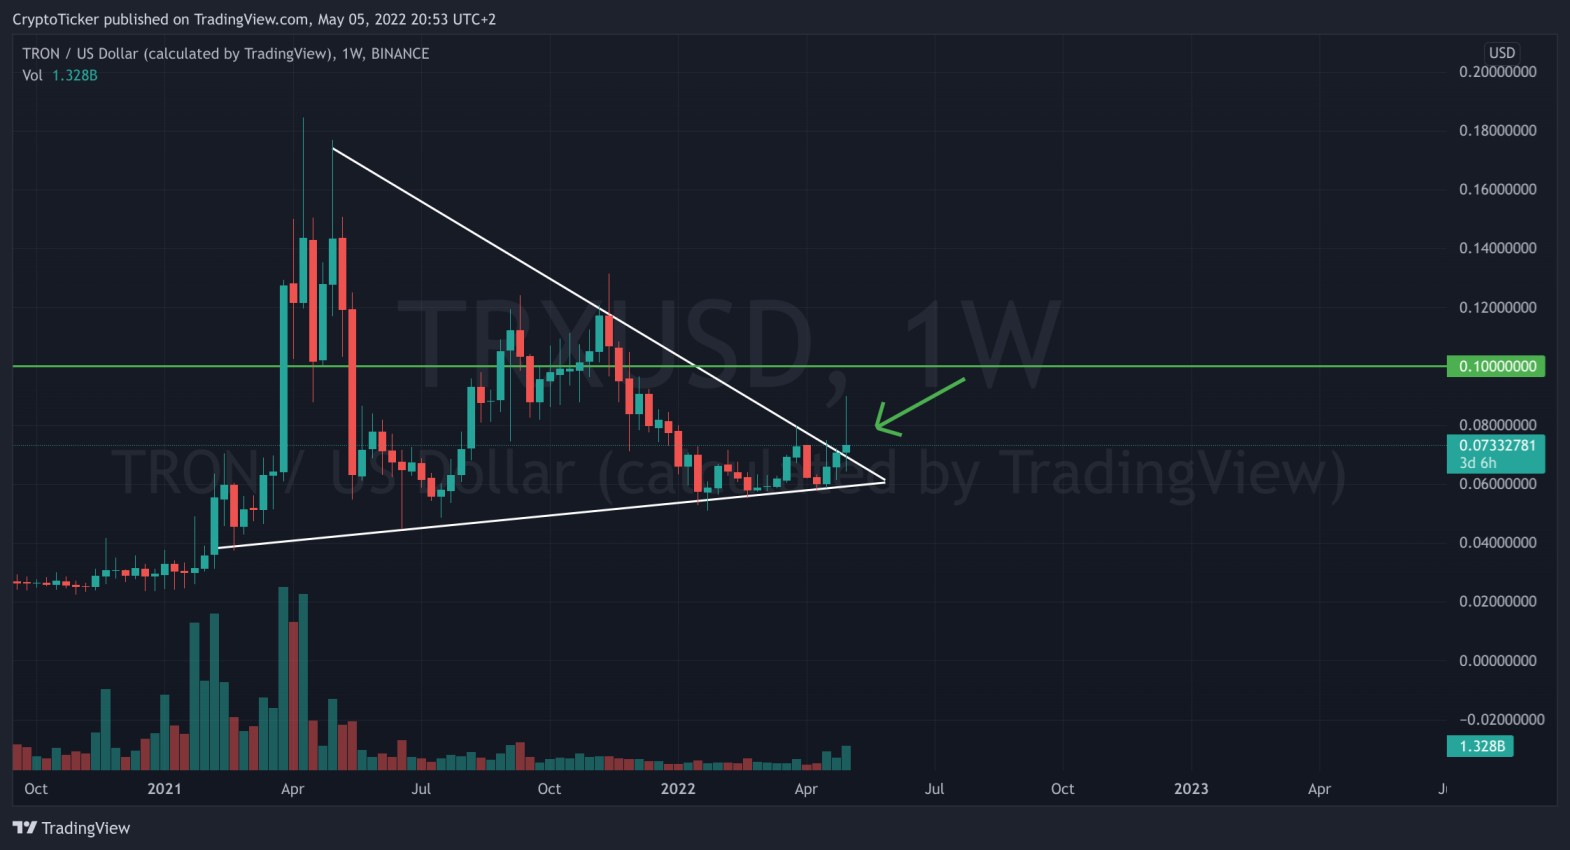 TRX/USD 1-week chart showing the break in the upper trendline